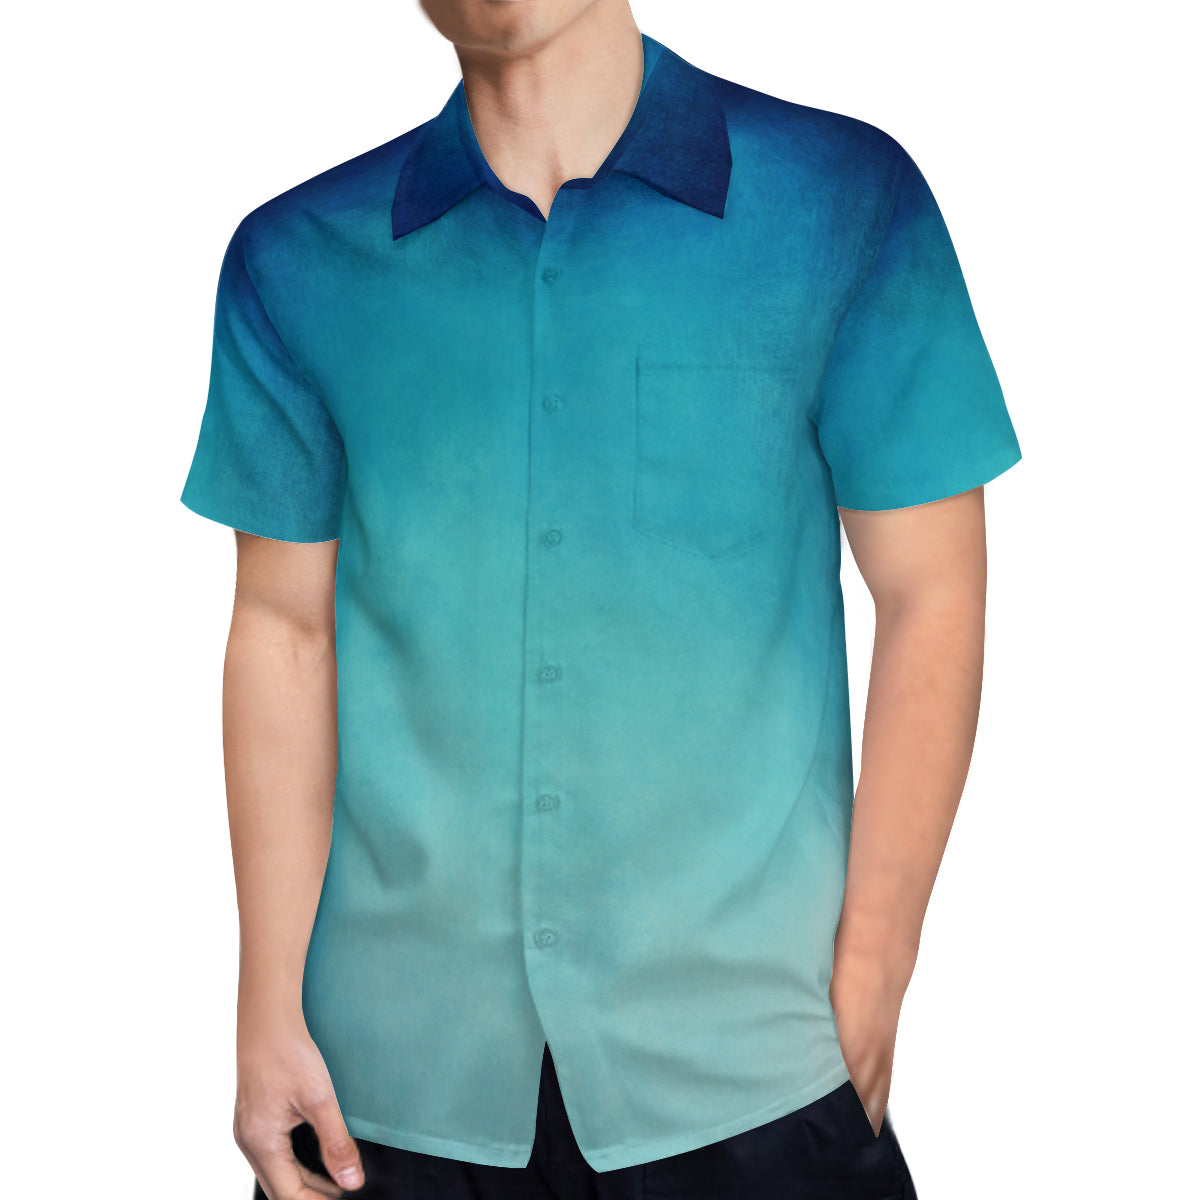 Men's Shirt, Ombre Shirt Men, Blue Shirt Men, Blue Ombre Shirt, Men's Dress Shirt, Men's Top, Men's Button Down Shirt, Unique Shirt Men